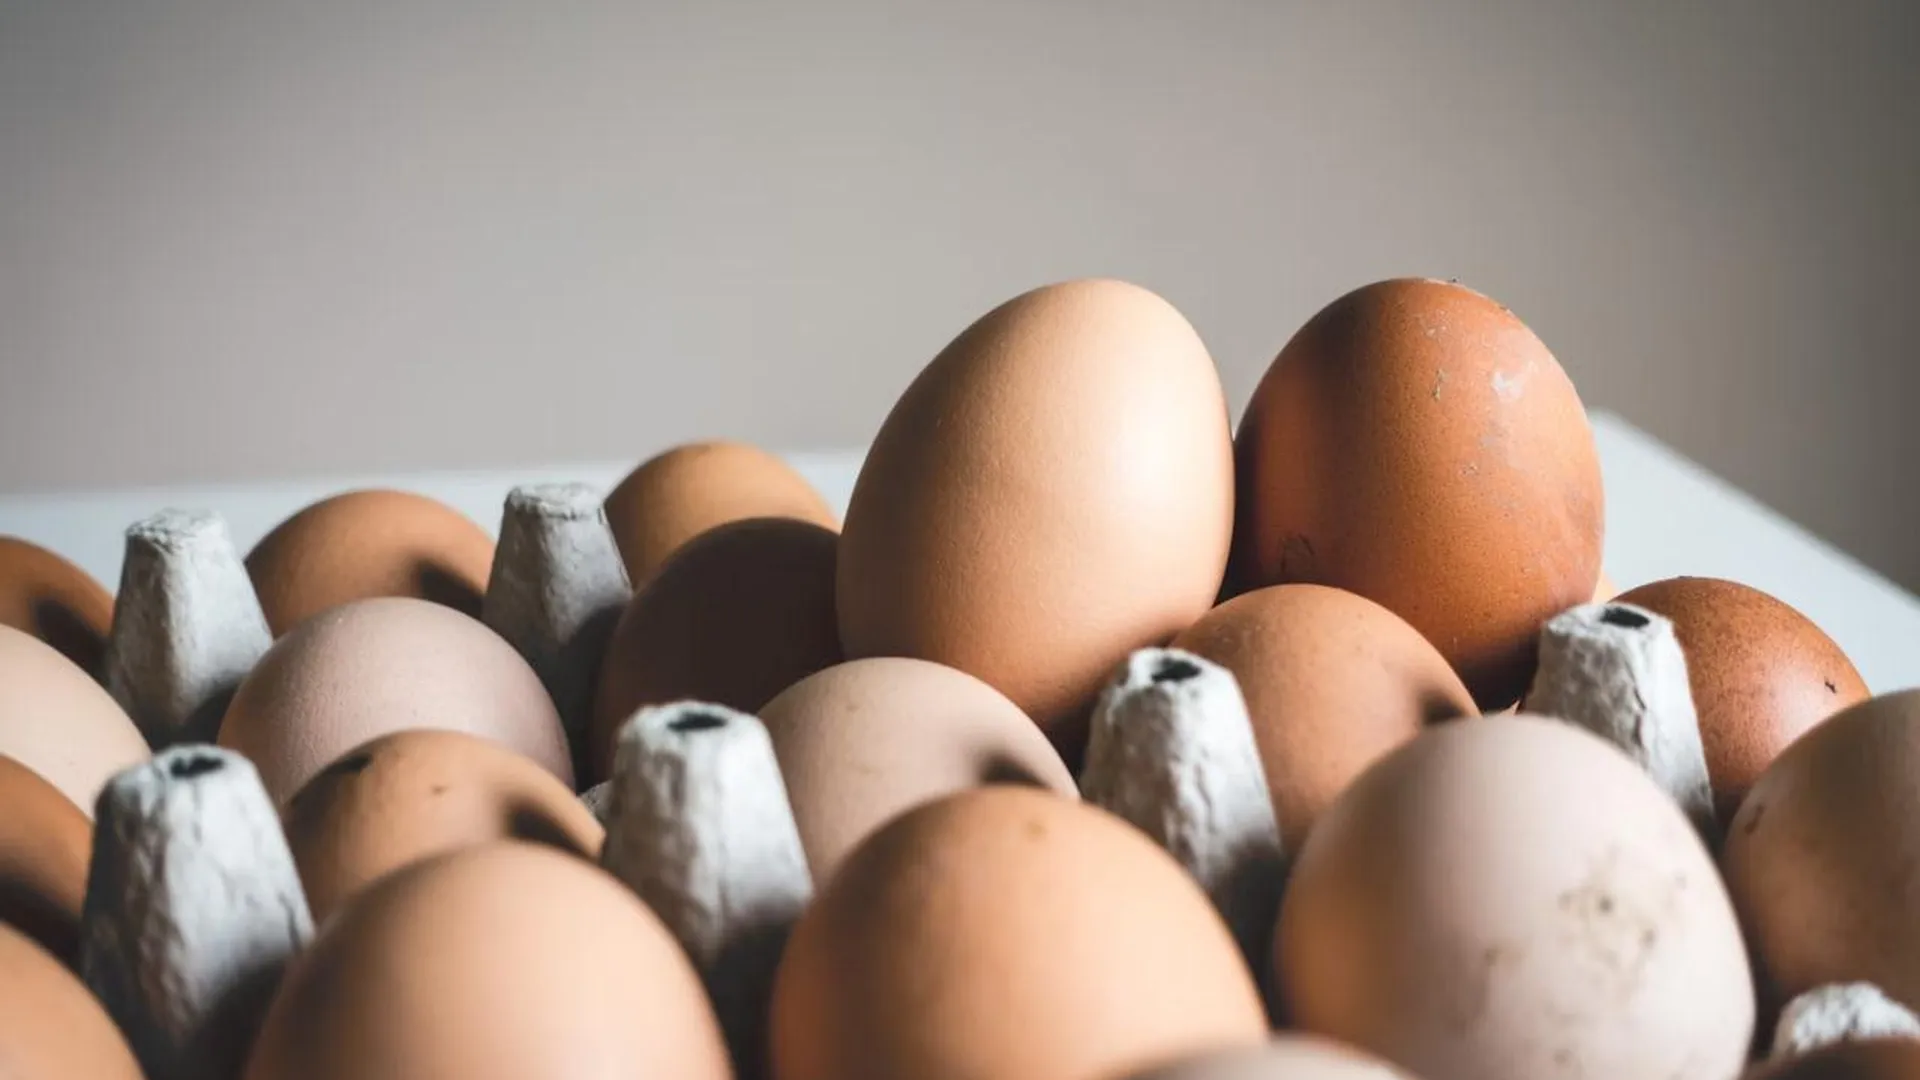 Цены на яйца снизились на 2,58% с начала года